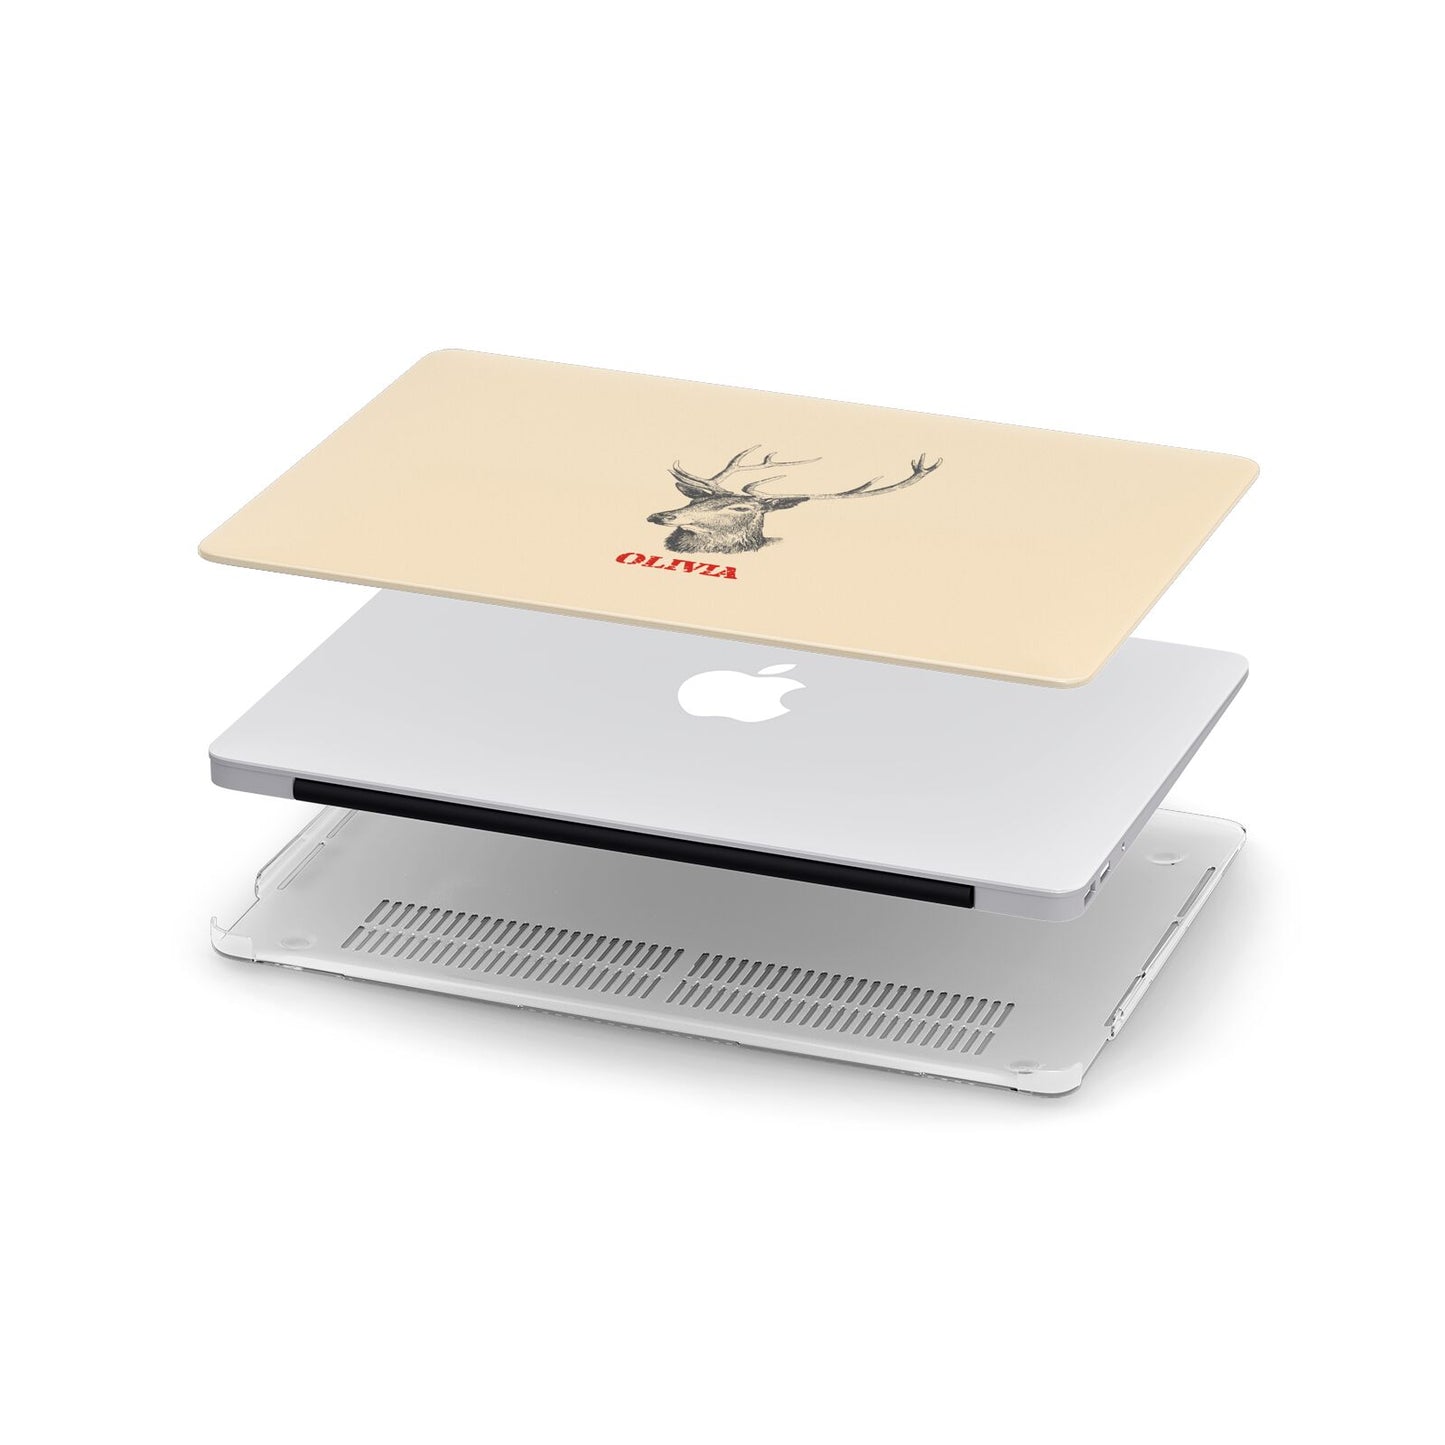 Personalised Rudolph Apple MacBook Case in Detail